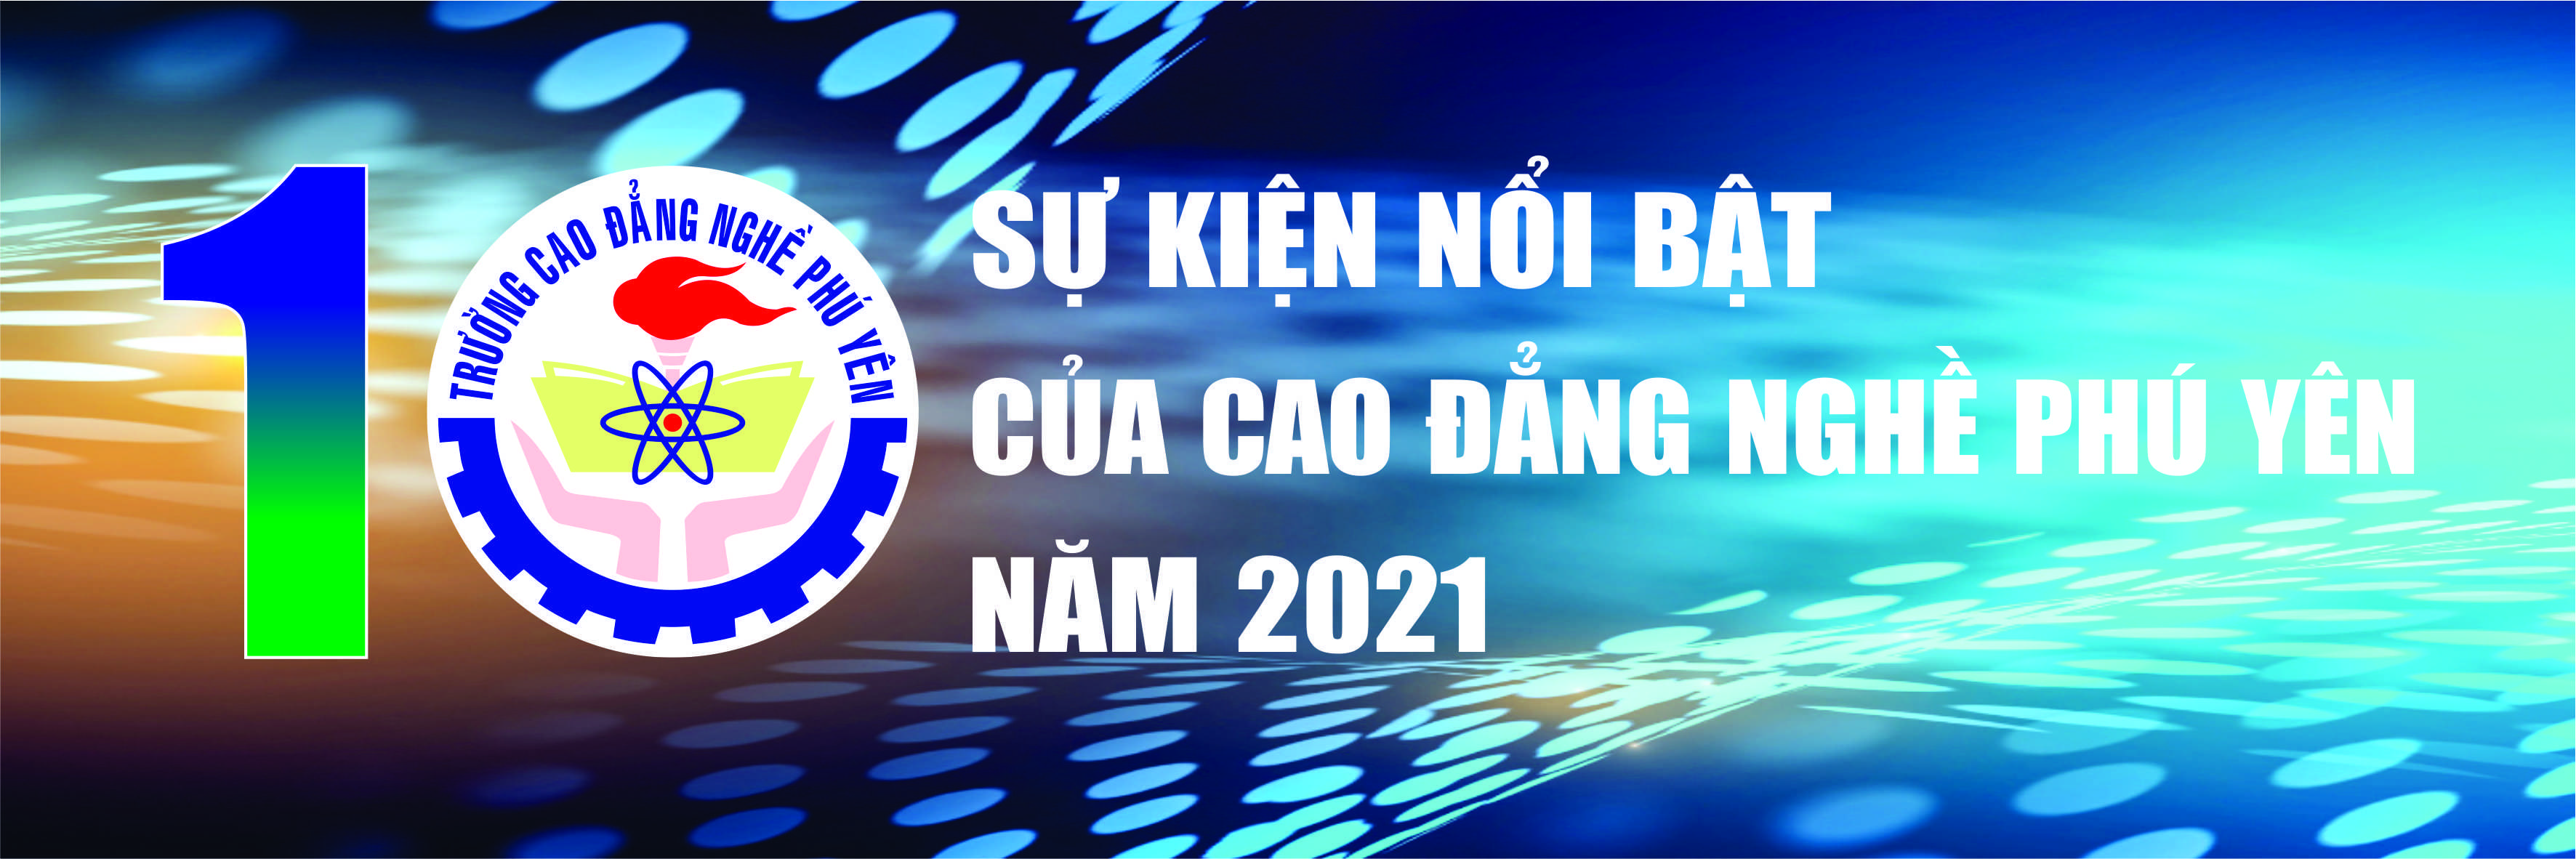 10 sự kiện nổi bật trong năm 2021-CĐ Nghề Phú Yên